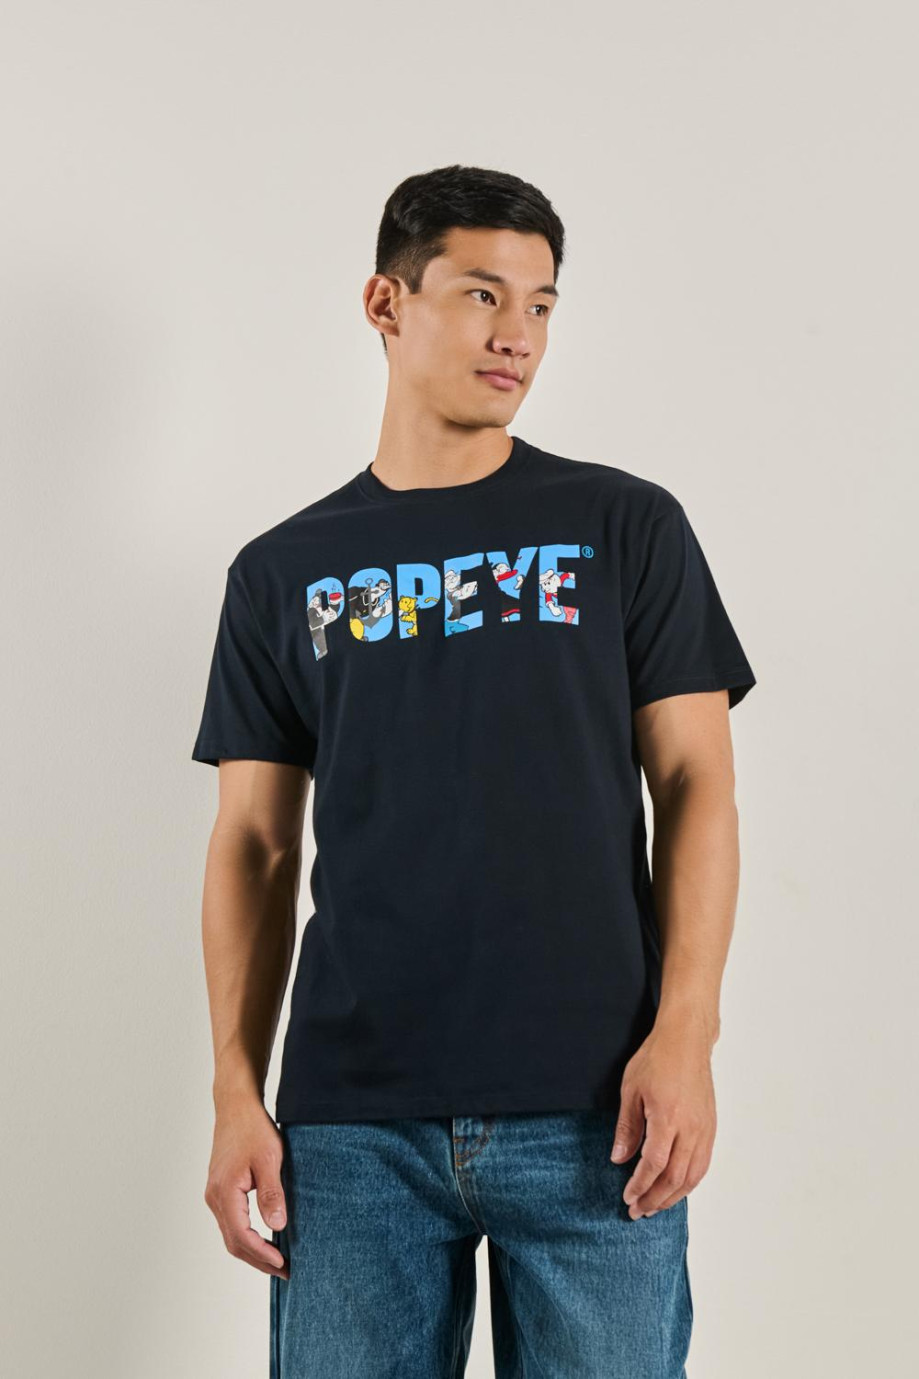 Camiseta manga corta con estampado de Popeye.